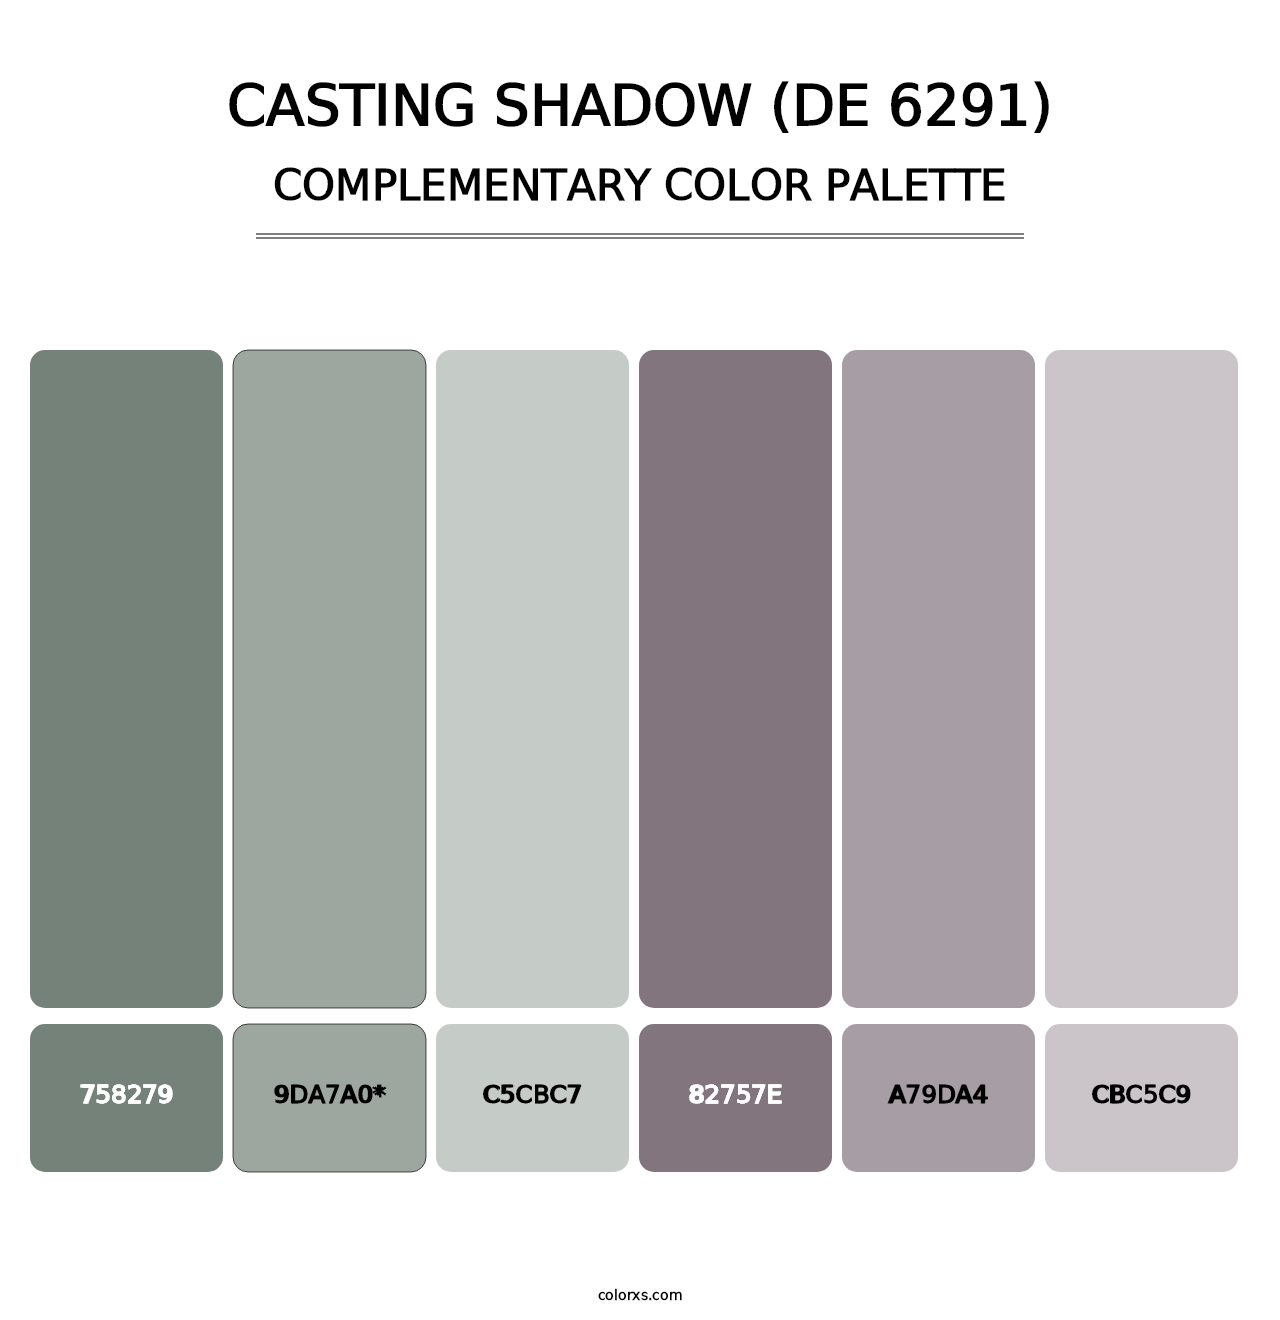 Casting Shadow (DE 6291) - Complementary Color Palette